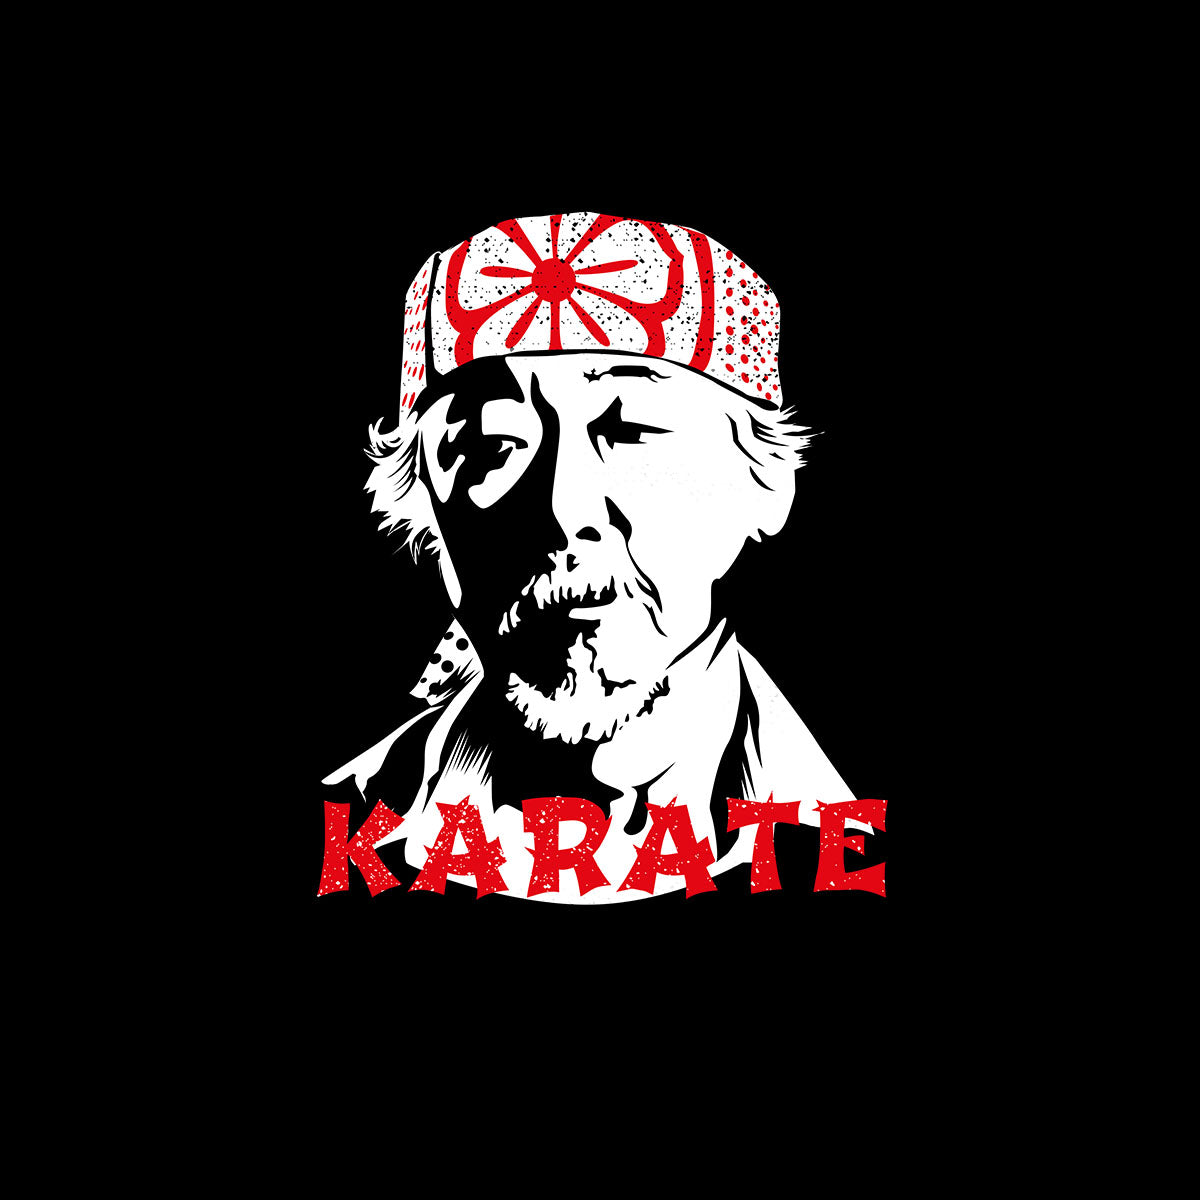 Mr Miyagi Karate Kid 80s Cult Movie Unisex T-Shirt - Kuzi Tees